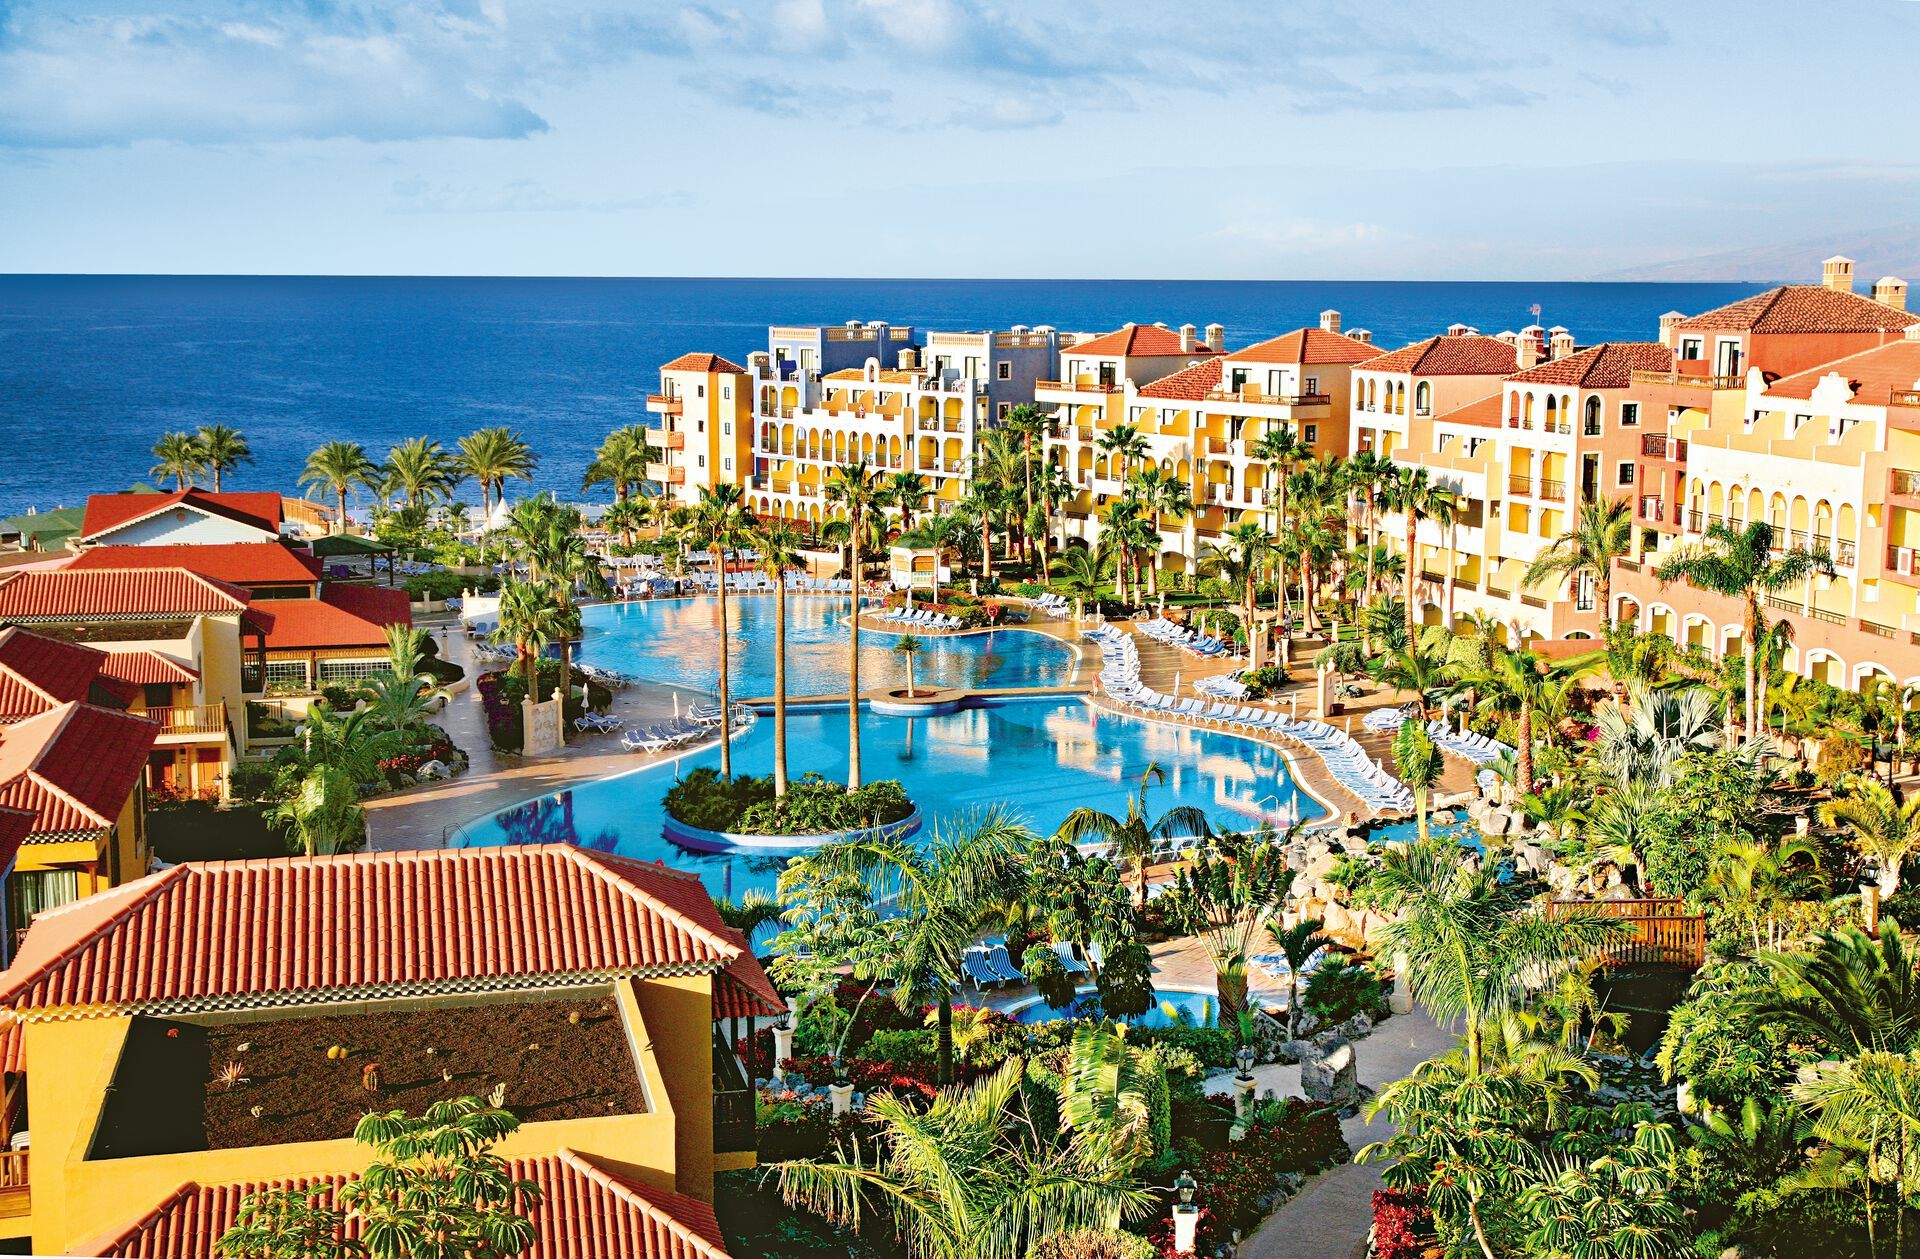 Canaries - Tenerife - Espagne - Hôtel Bahia Principe Sunlight Costa Adeje 4*